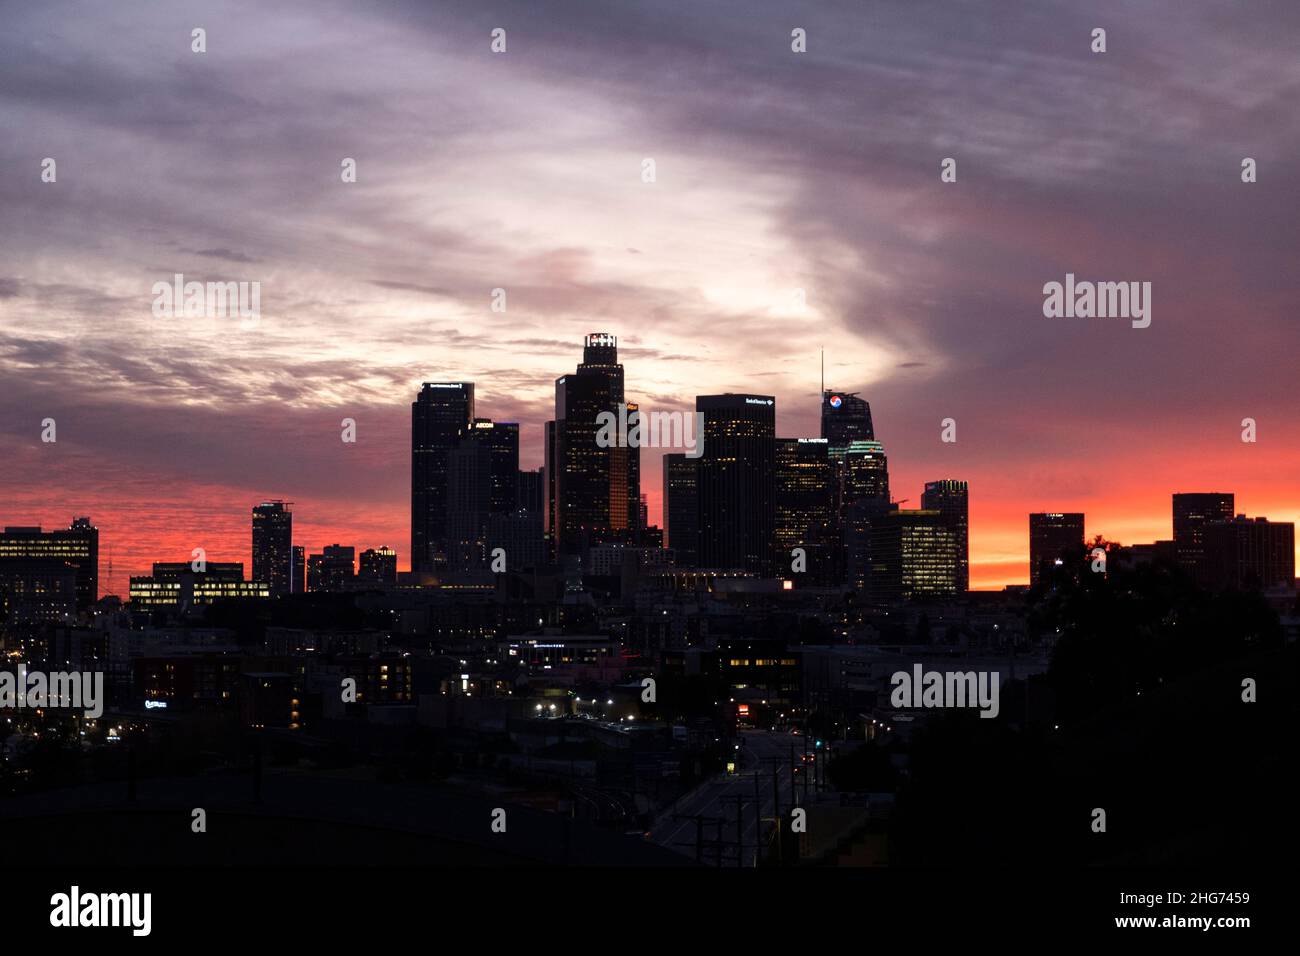 Silueta del horizonte del centro de Los Ángeles con un colorido telón de fondo de puesta de sol Foto de stock